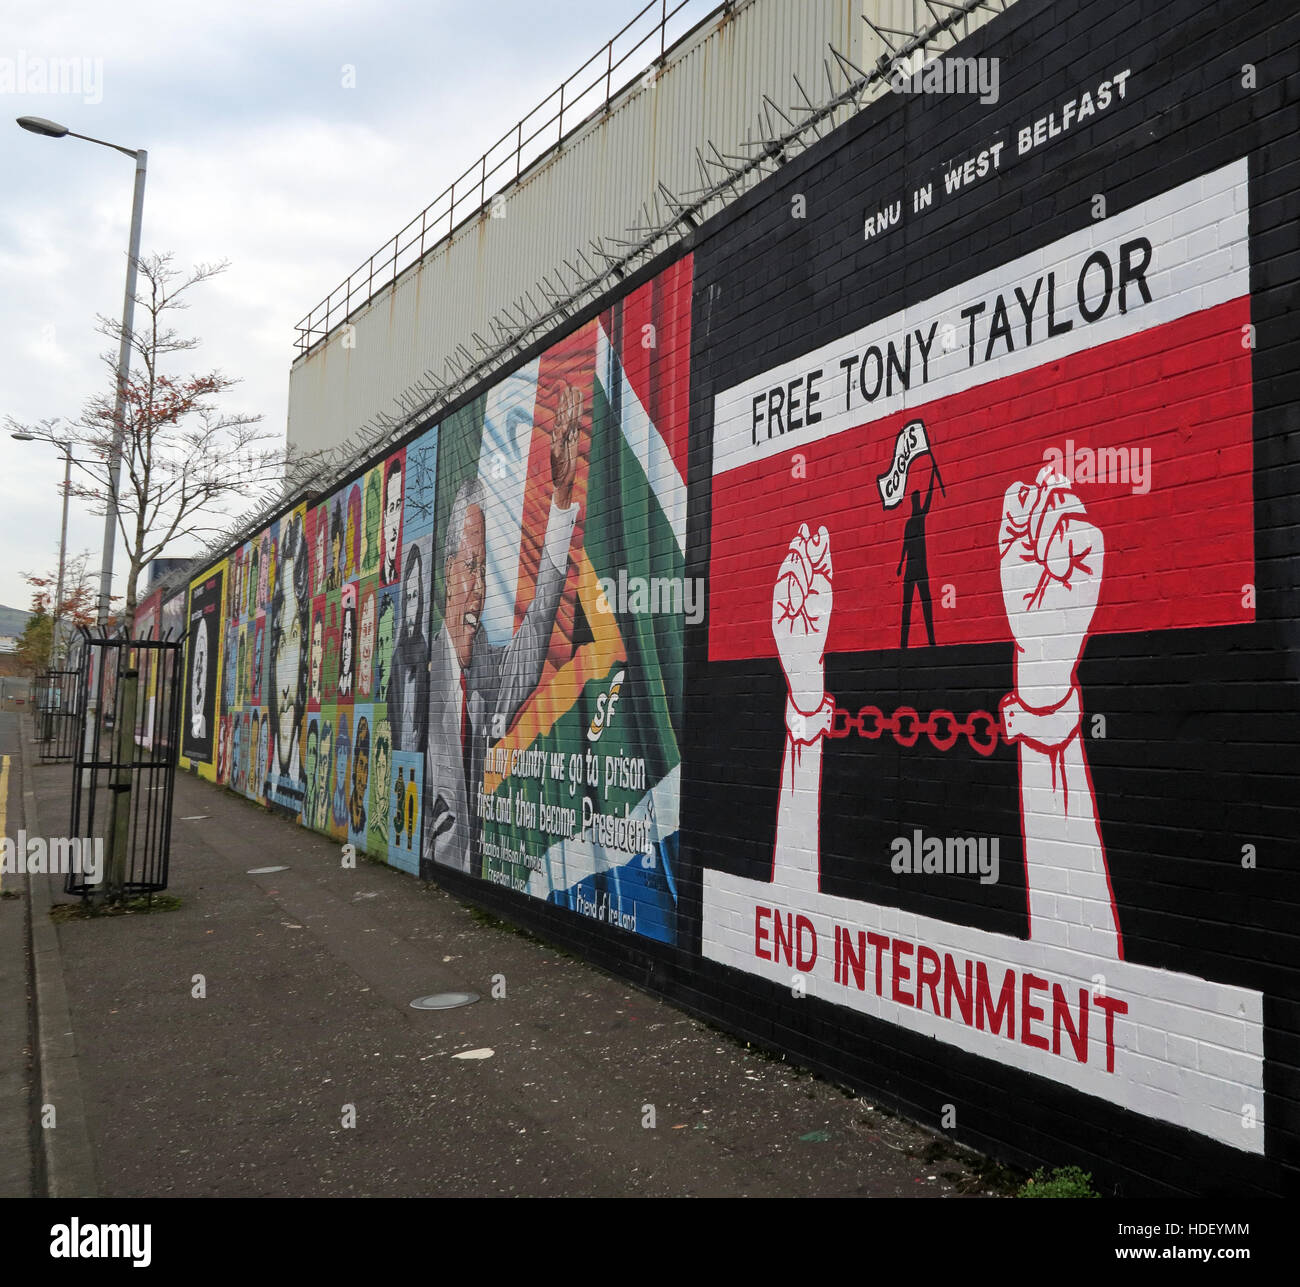 Articles de Tony Taylor - Fin - internement la paix Wall,Cupar Way,l'Ouest de Belfast, Irlande du Nord, Royaume-Uni Banque D'Images